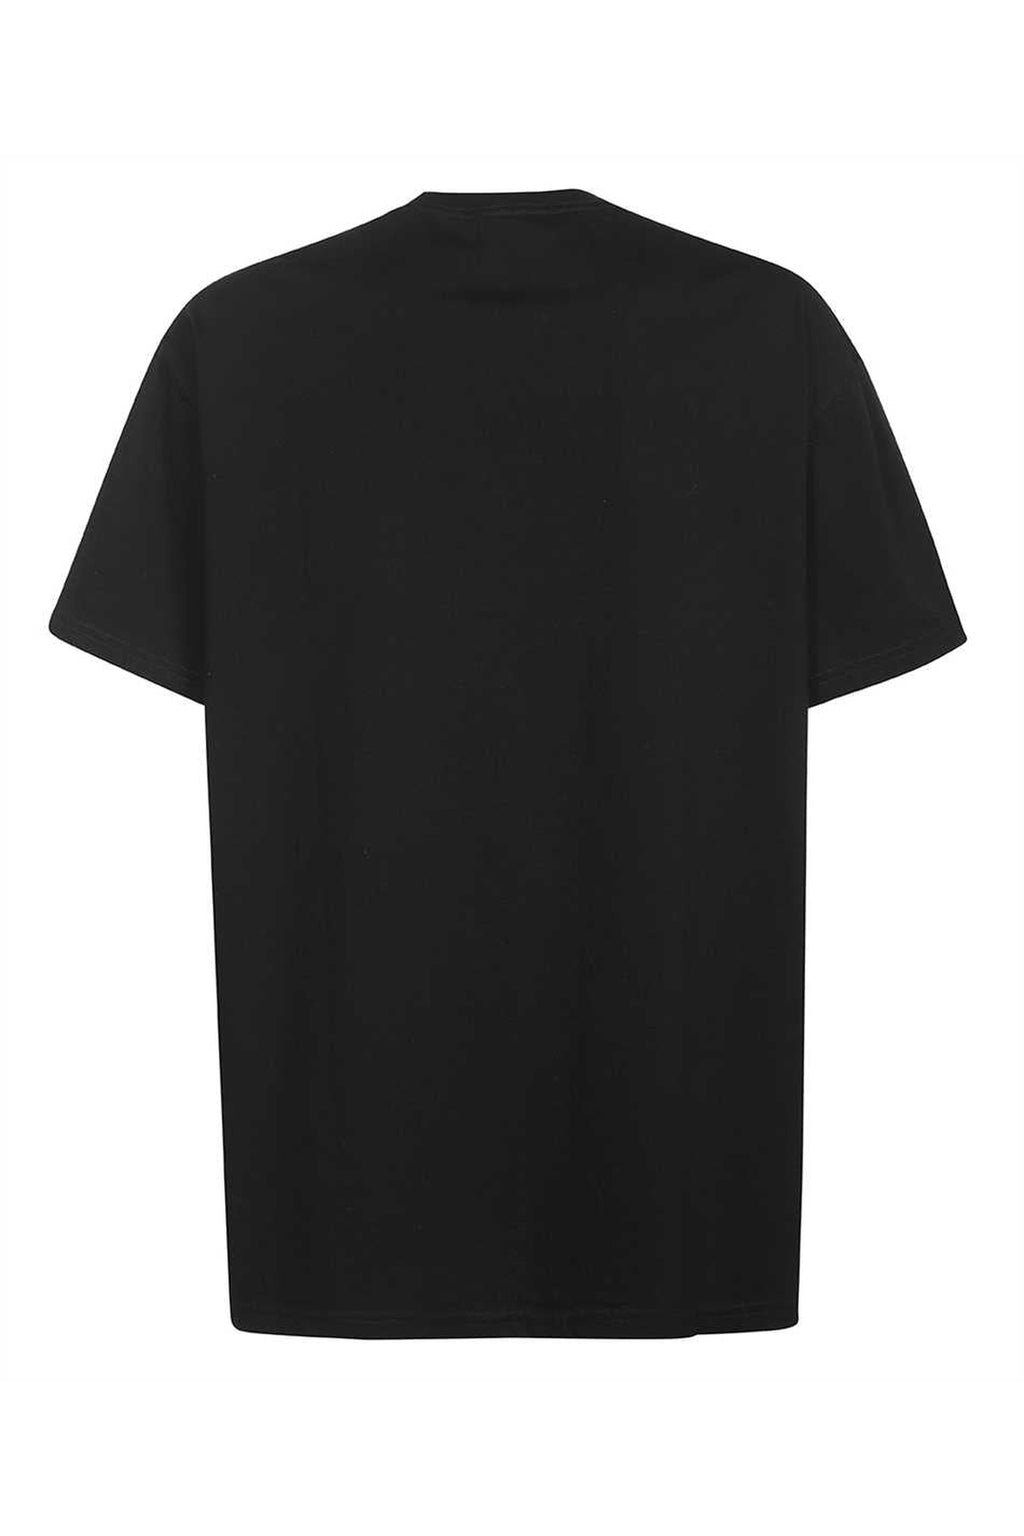 Vivienne Westwood-OUTLET-SALE-Cotton crew-neck T-shirt-ARCHIVIST